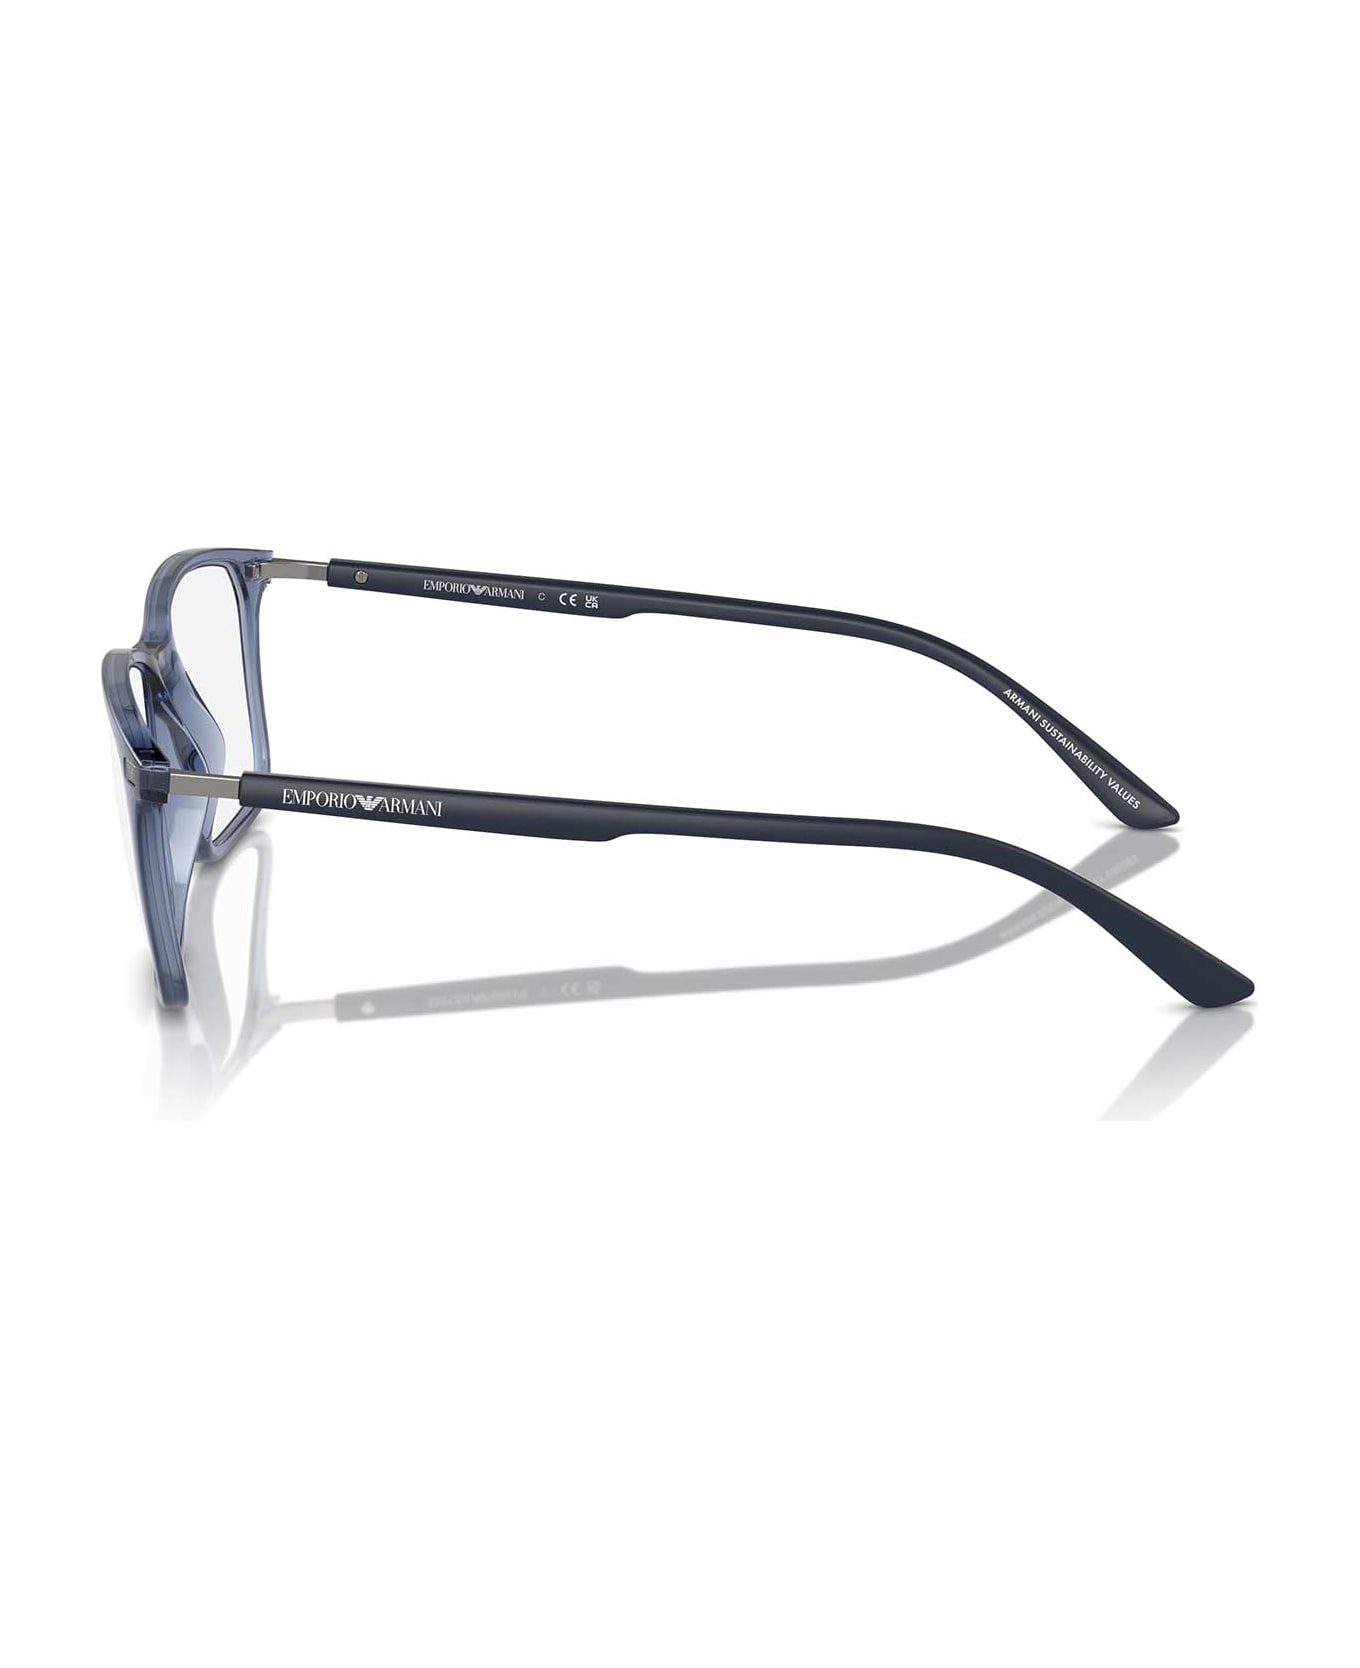 Emporio Armani Ea3237 Shiny Transparent Blue Glasses - Shiny Transparent Blue